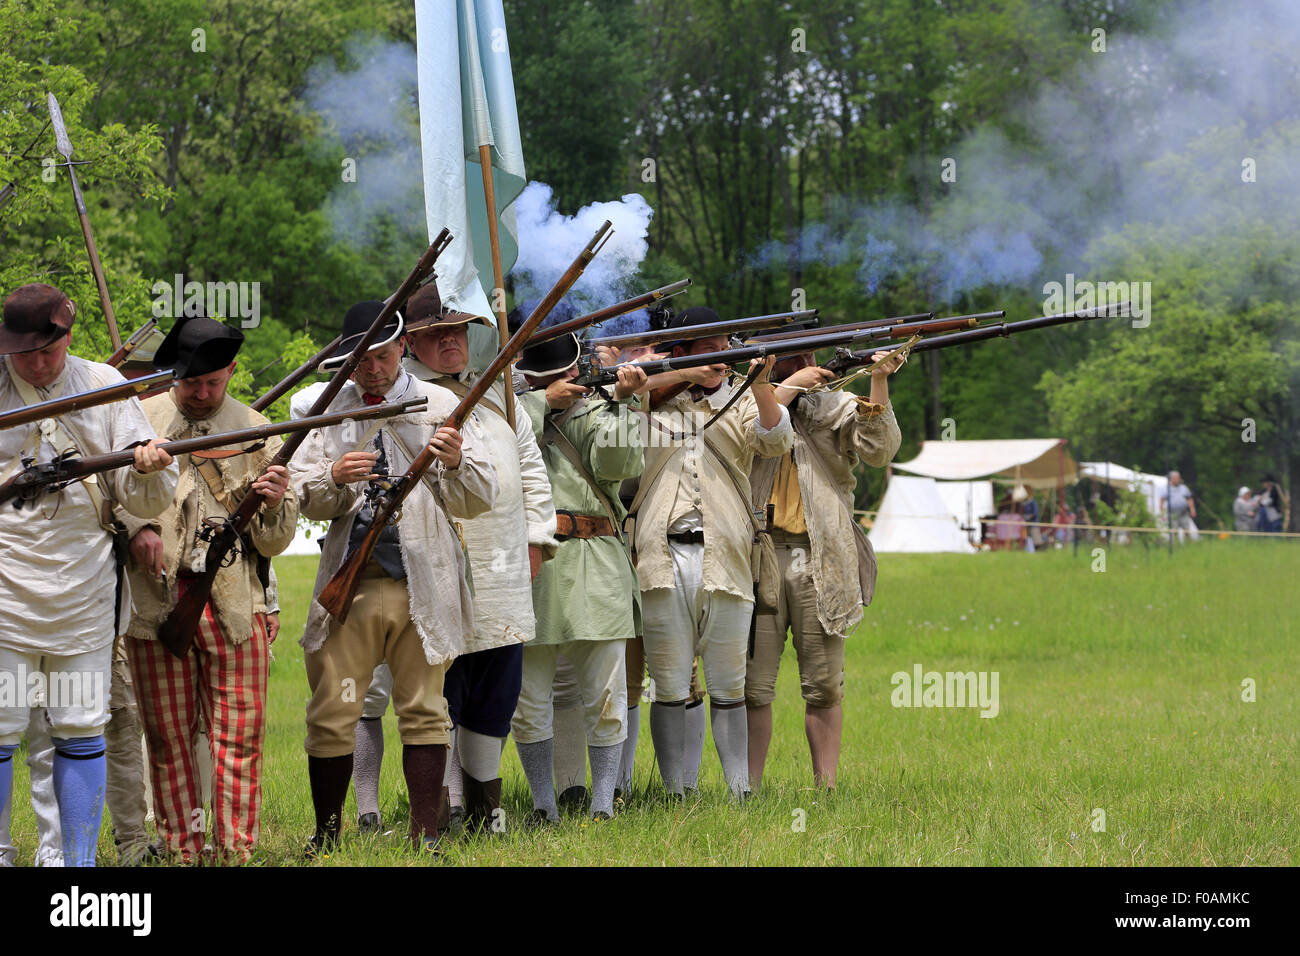 Musket firing at Revolutionary War reenactment at Jockey Hollow Encampment Weekend Morristown New Jersey USA Stock Photo